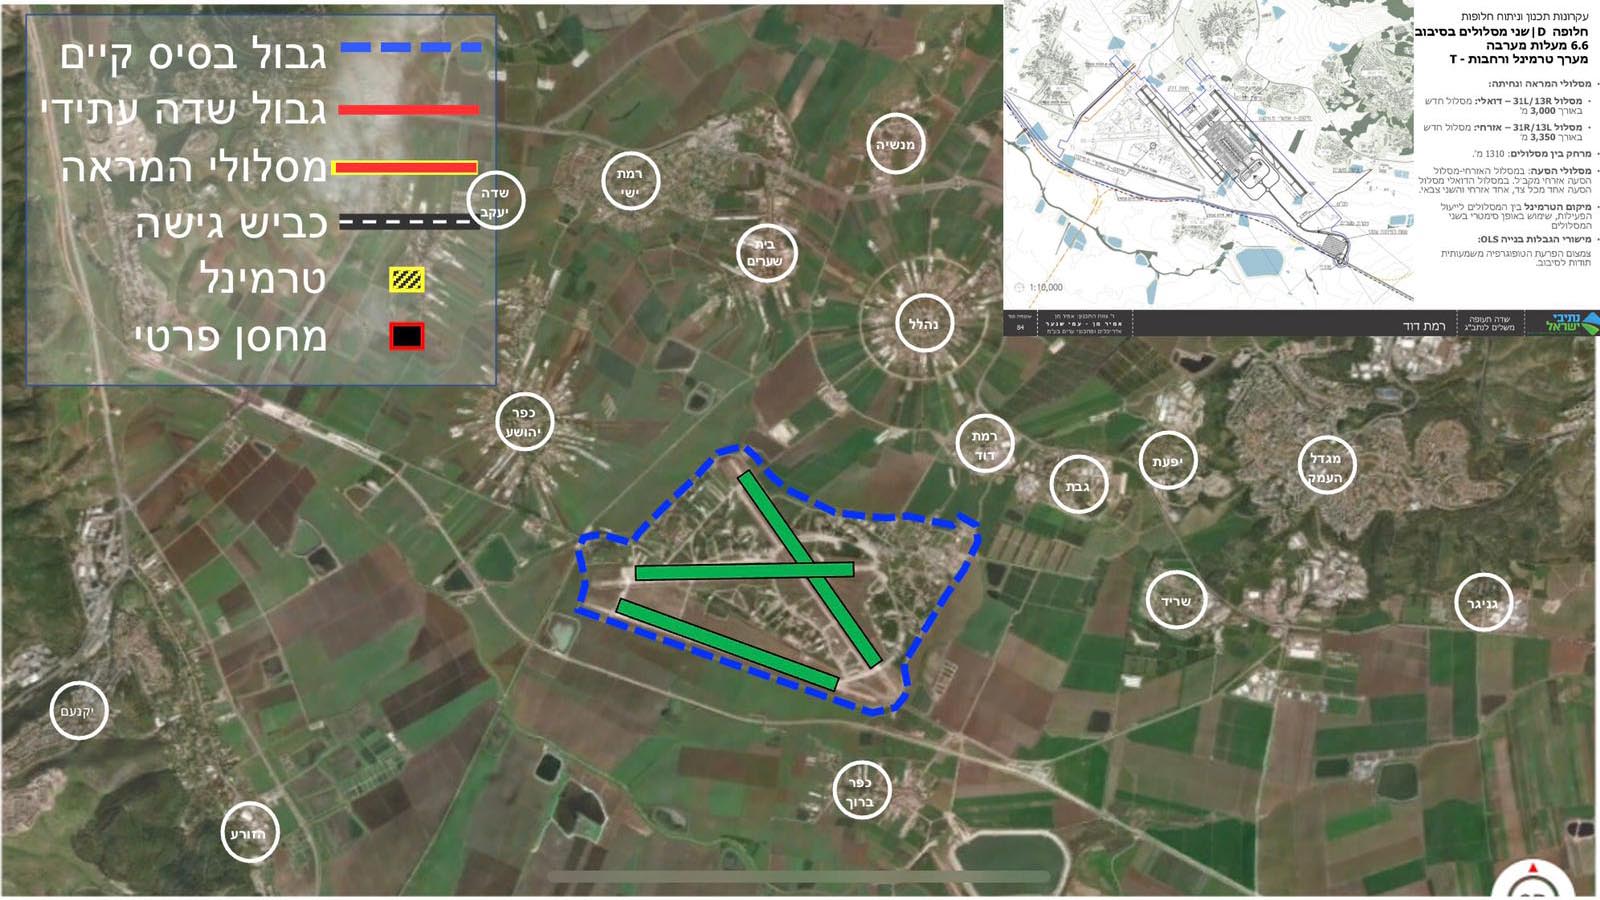 התכנית להקמת שדה תעופה בינלאומי ברמת דוד שבעמק יזרעאל. (קרדיט: מנהל התכנון)